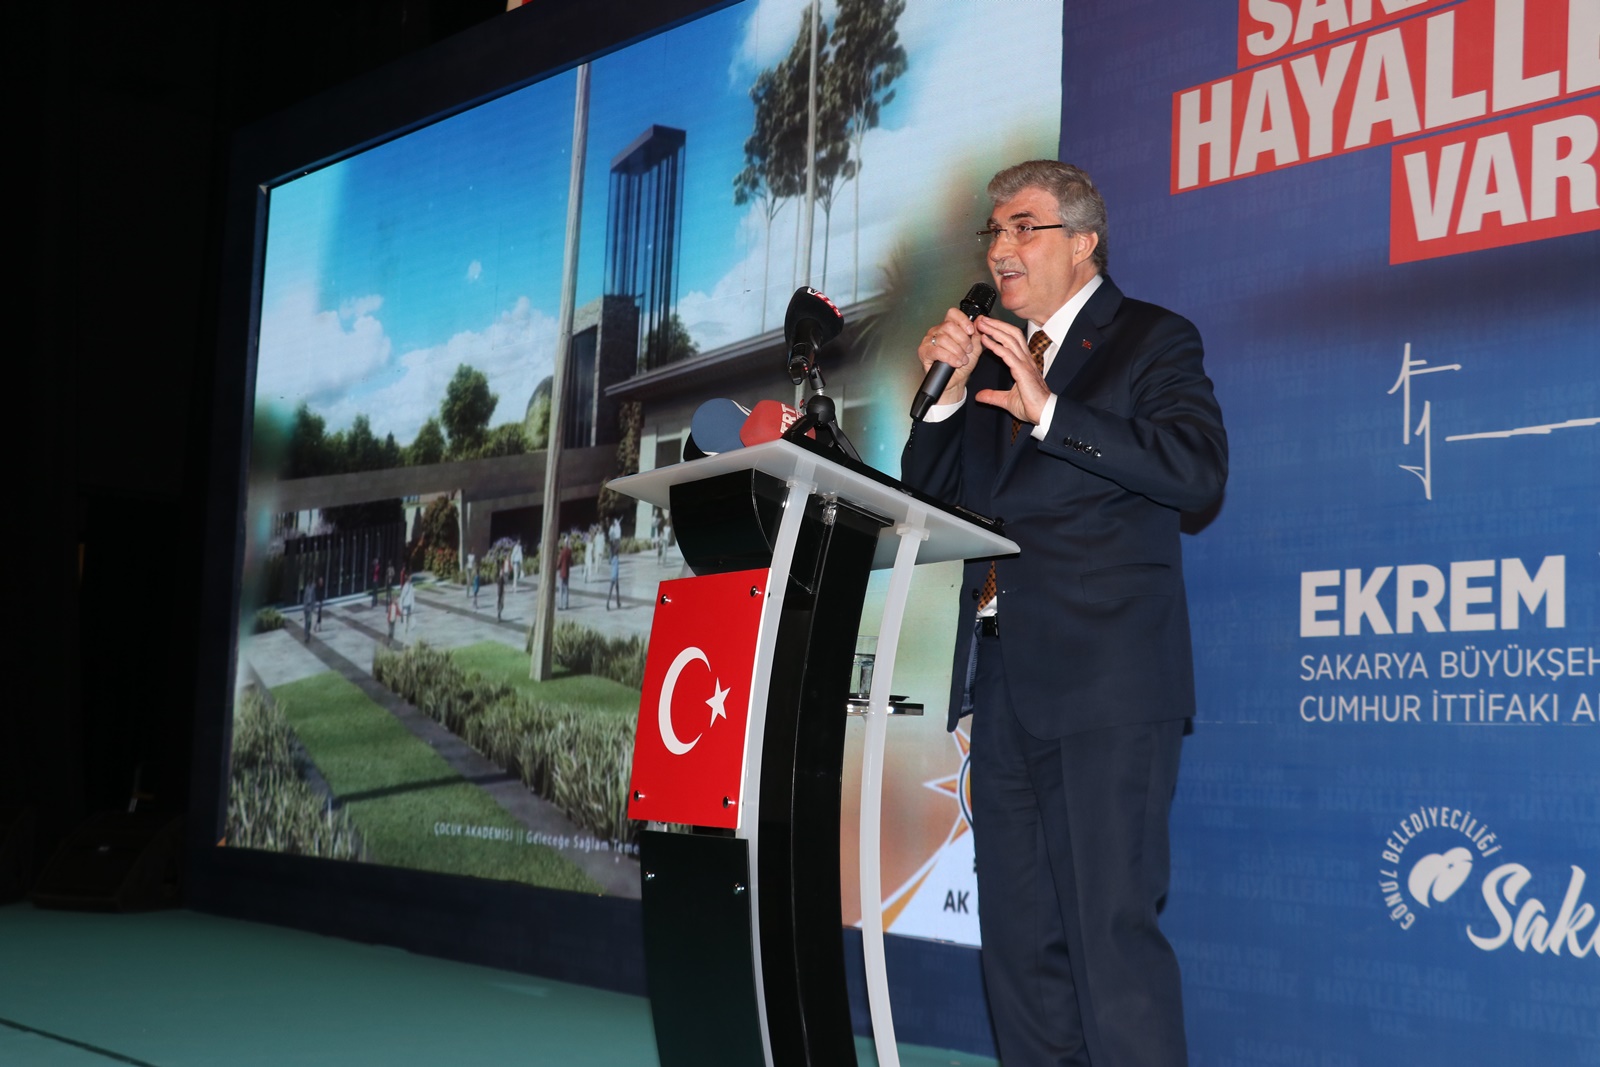 Sakarya Büyükşehir Belediye Başkanı Ekrem Yüce